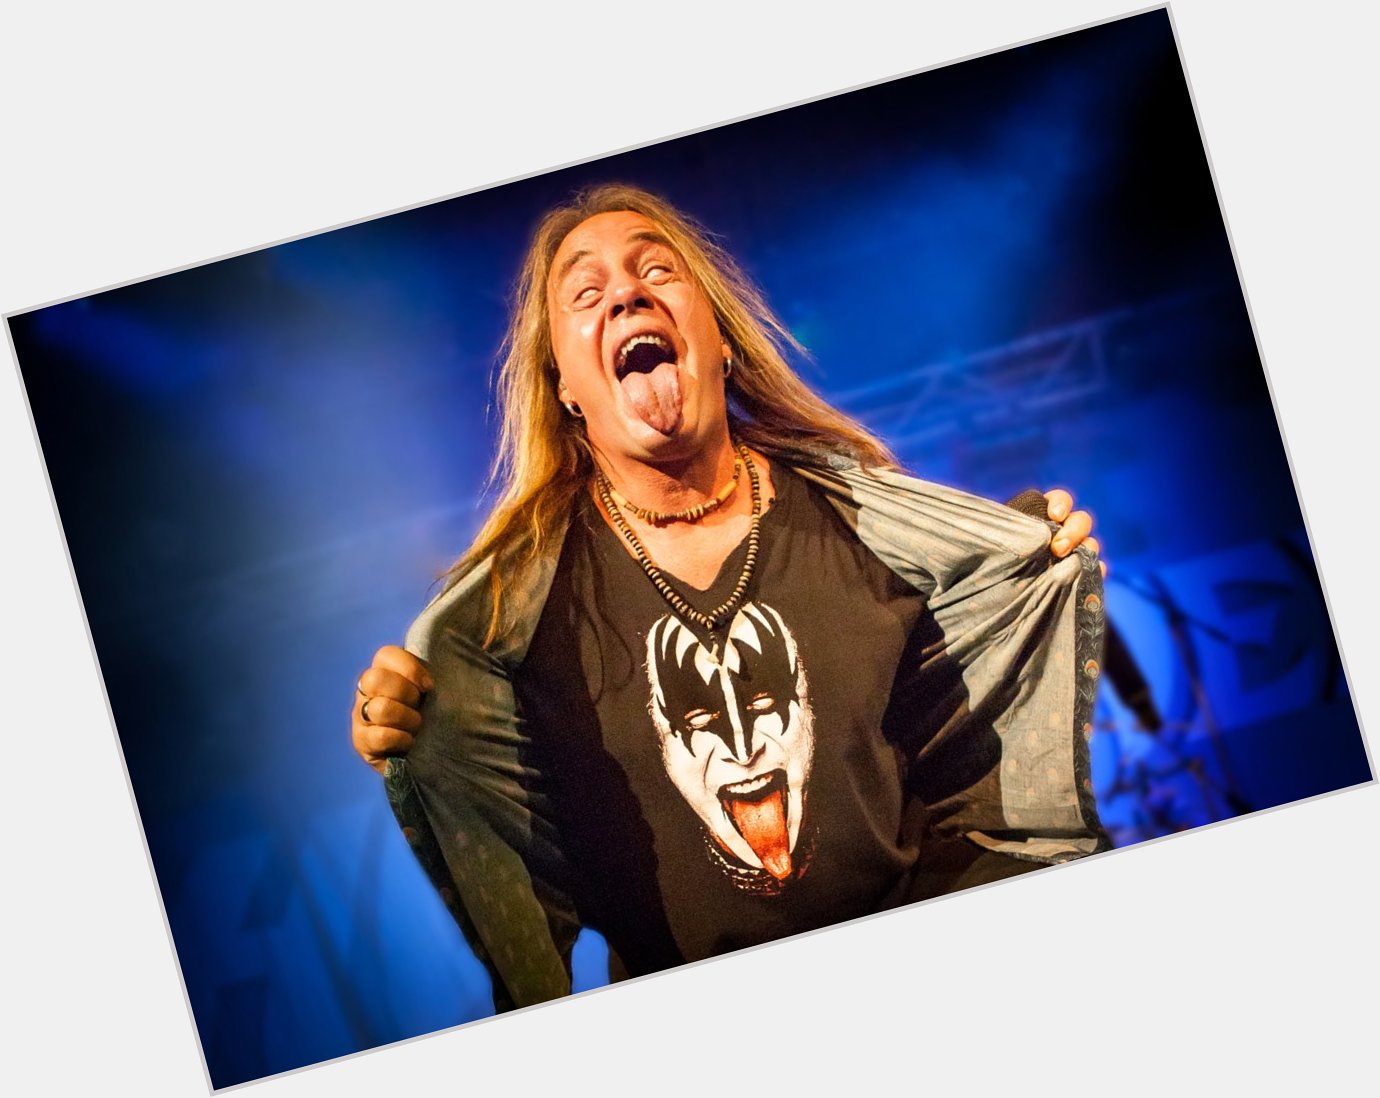 Happy birthday to Helloween vocalist Andi Deris. 